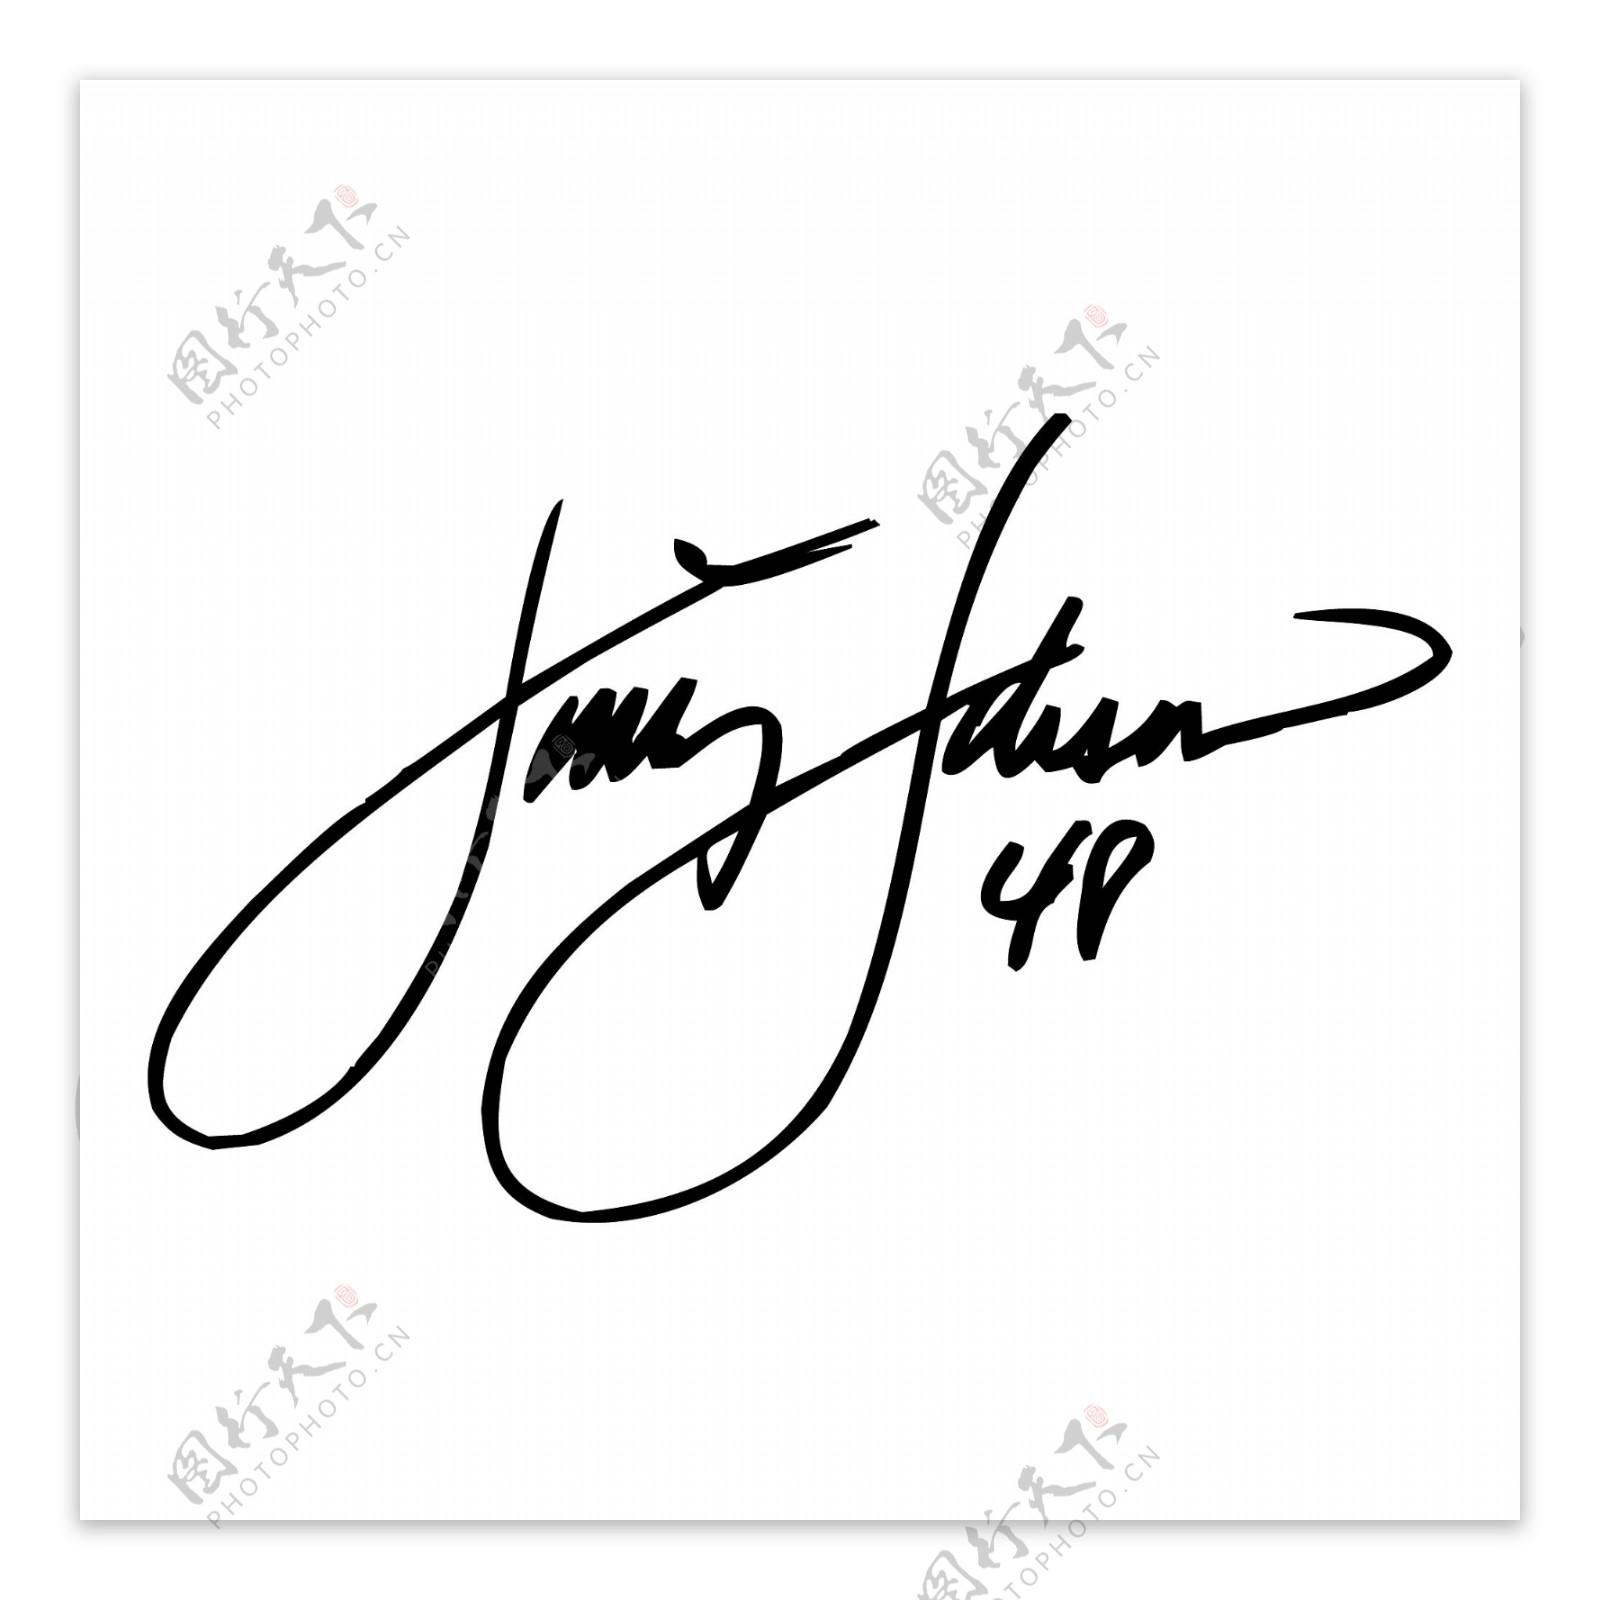 吉米约翰逊的签名